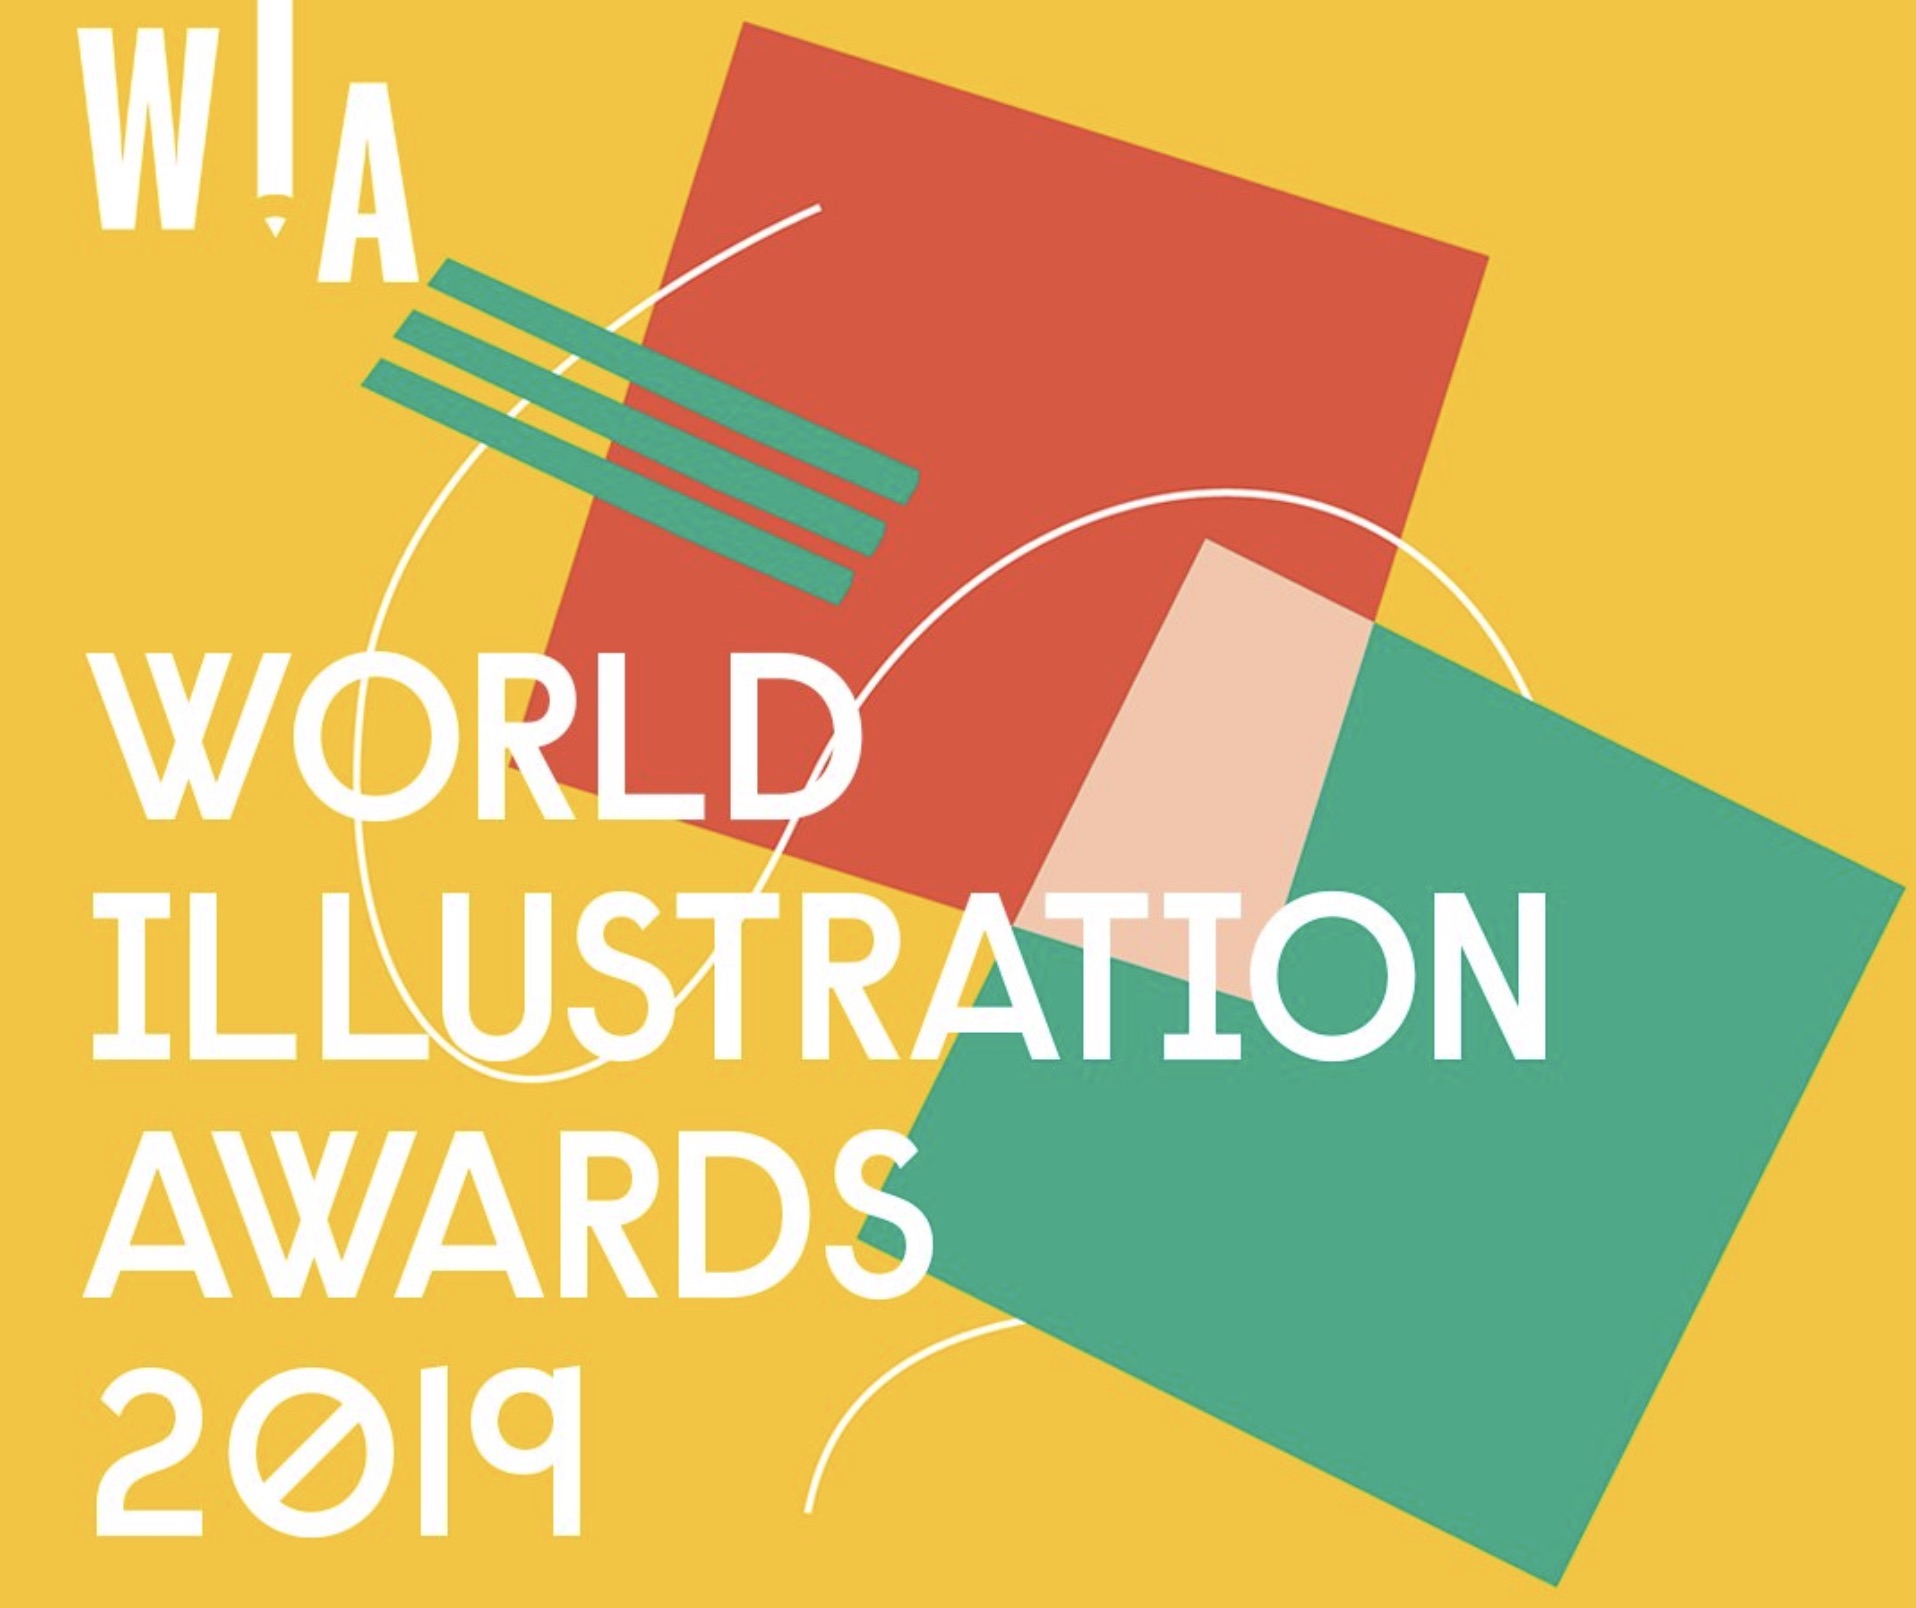 World Illustration Awards 2019 Exhibition